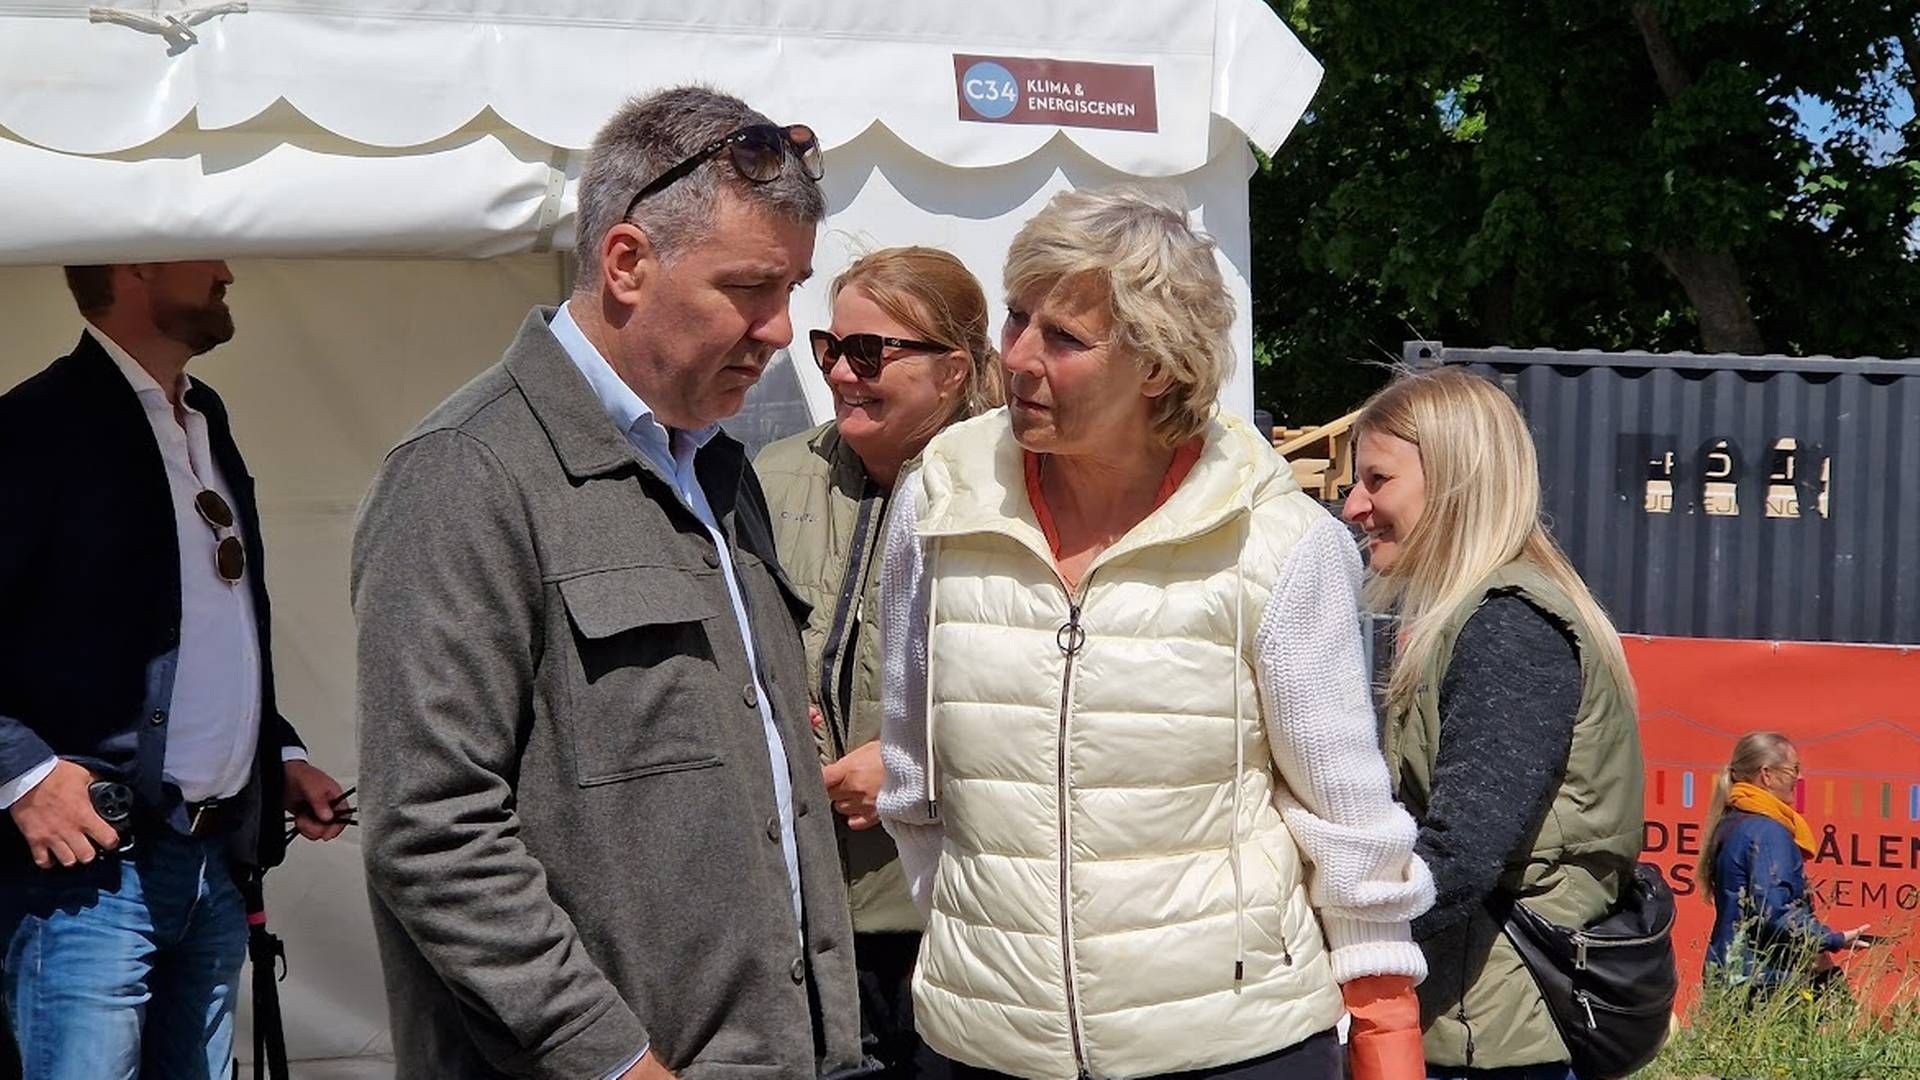 Lars Aagaard, klima og energiminister (M) sammen med tidligere konservativ toppolitiker Connie Hedegaard | Foto: Jakob Skouboe